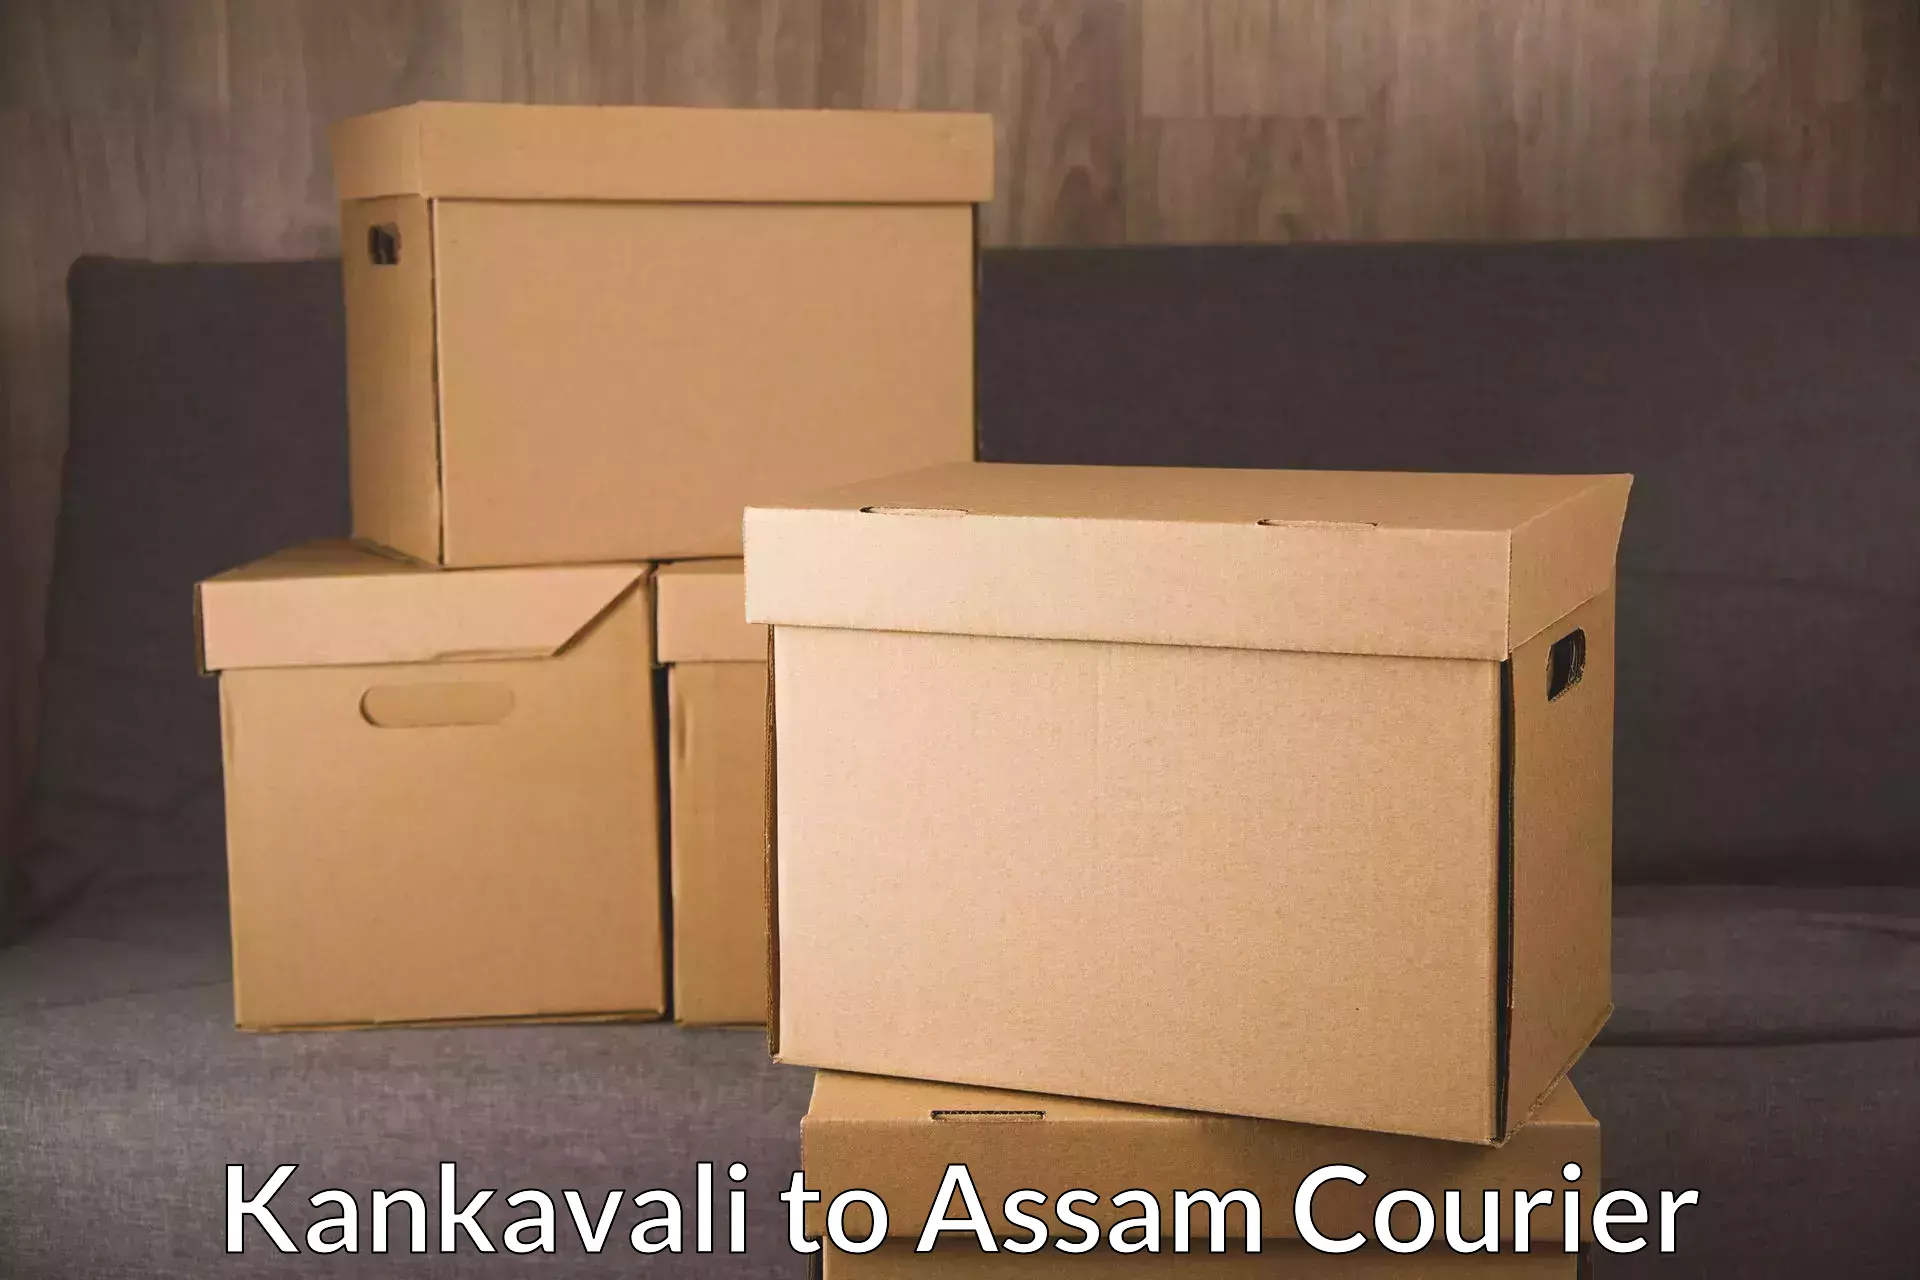 Advanced shipping network Kankavali to Karbi Anglong